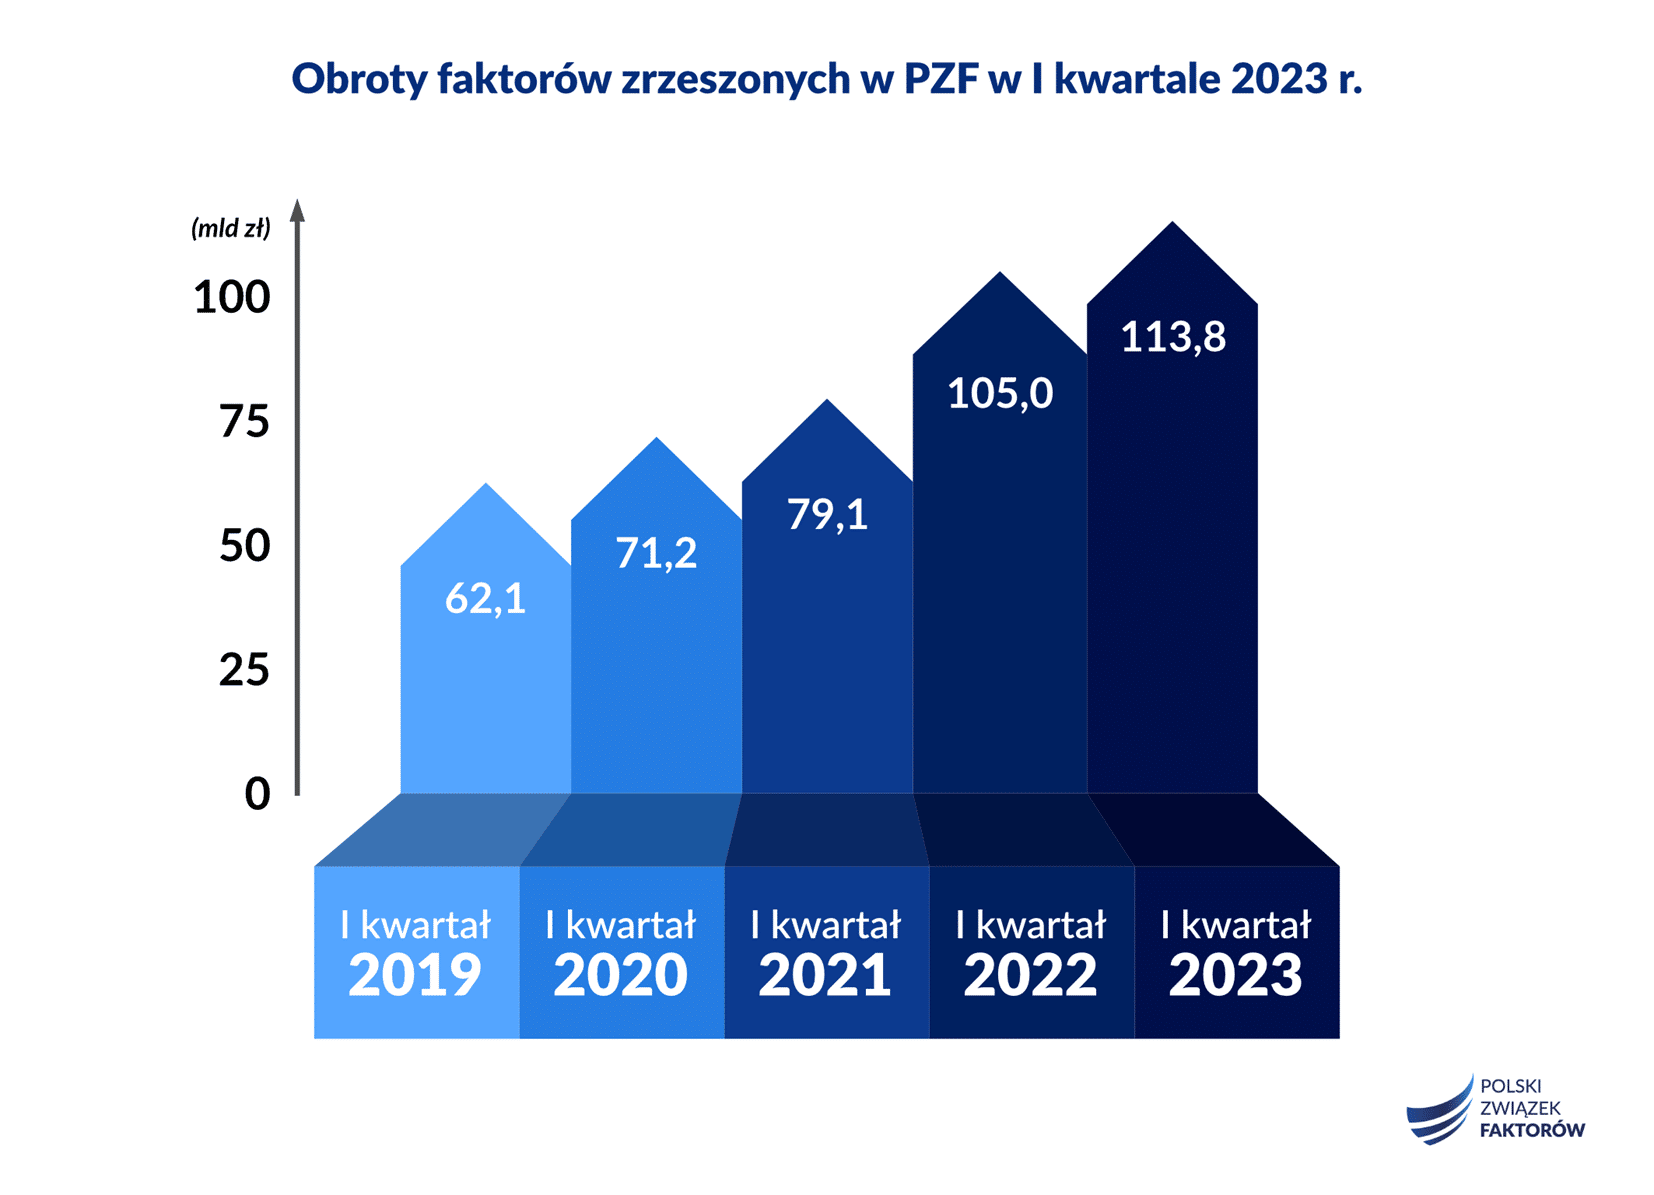 Polscy faktorzy sfinansowali w I kwartale 2023 2